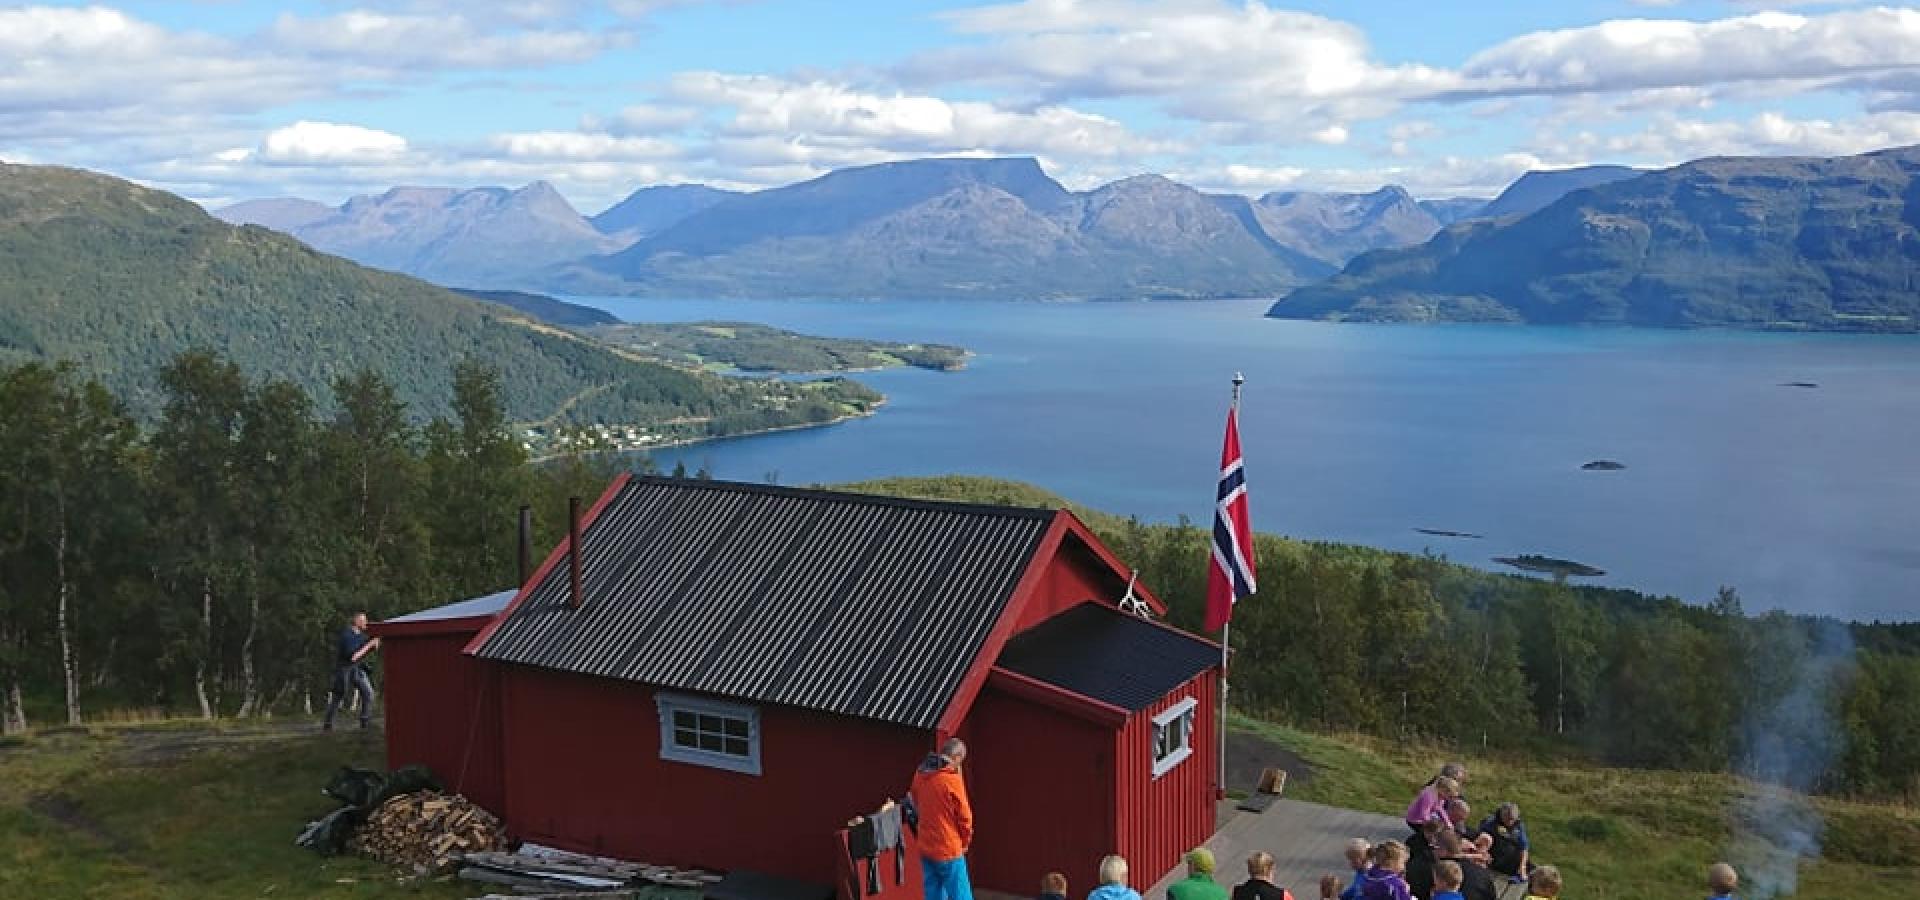 Rød hytte i fjellet med utsikt over fjell og fjorder